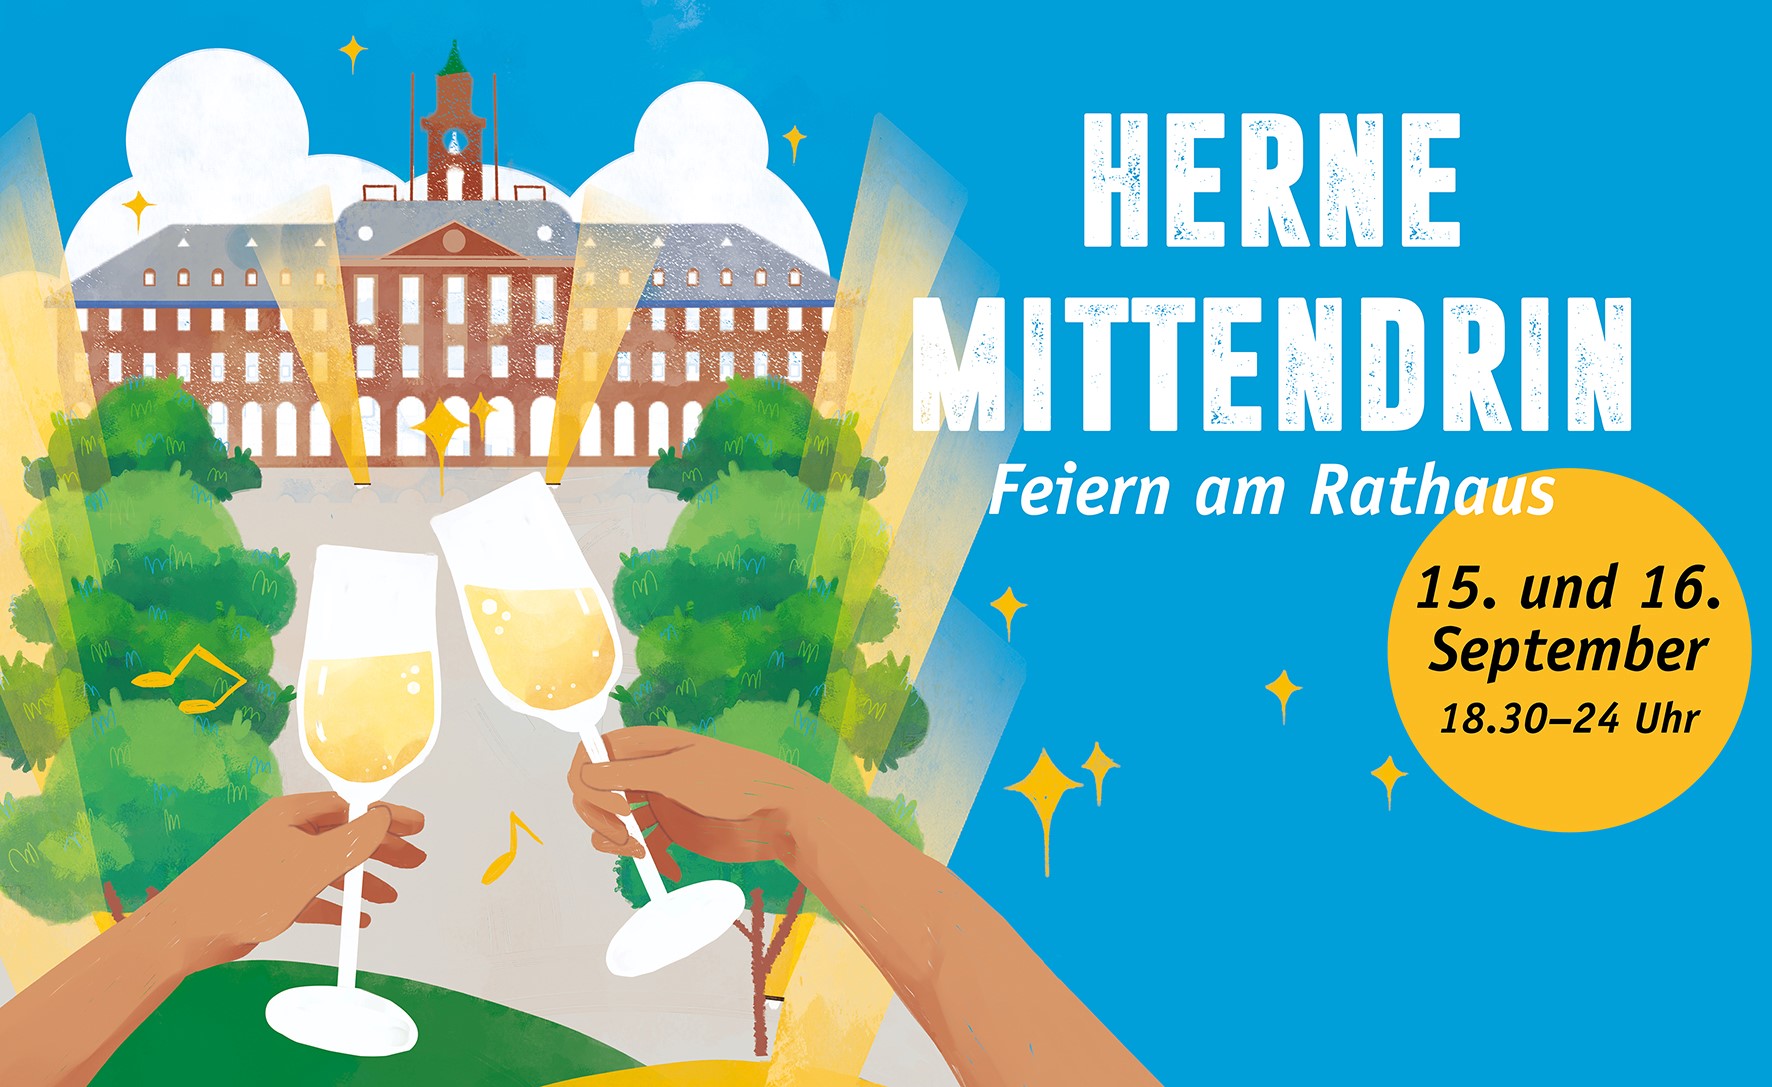 Herne mittendrin – Feiern am Rathaus